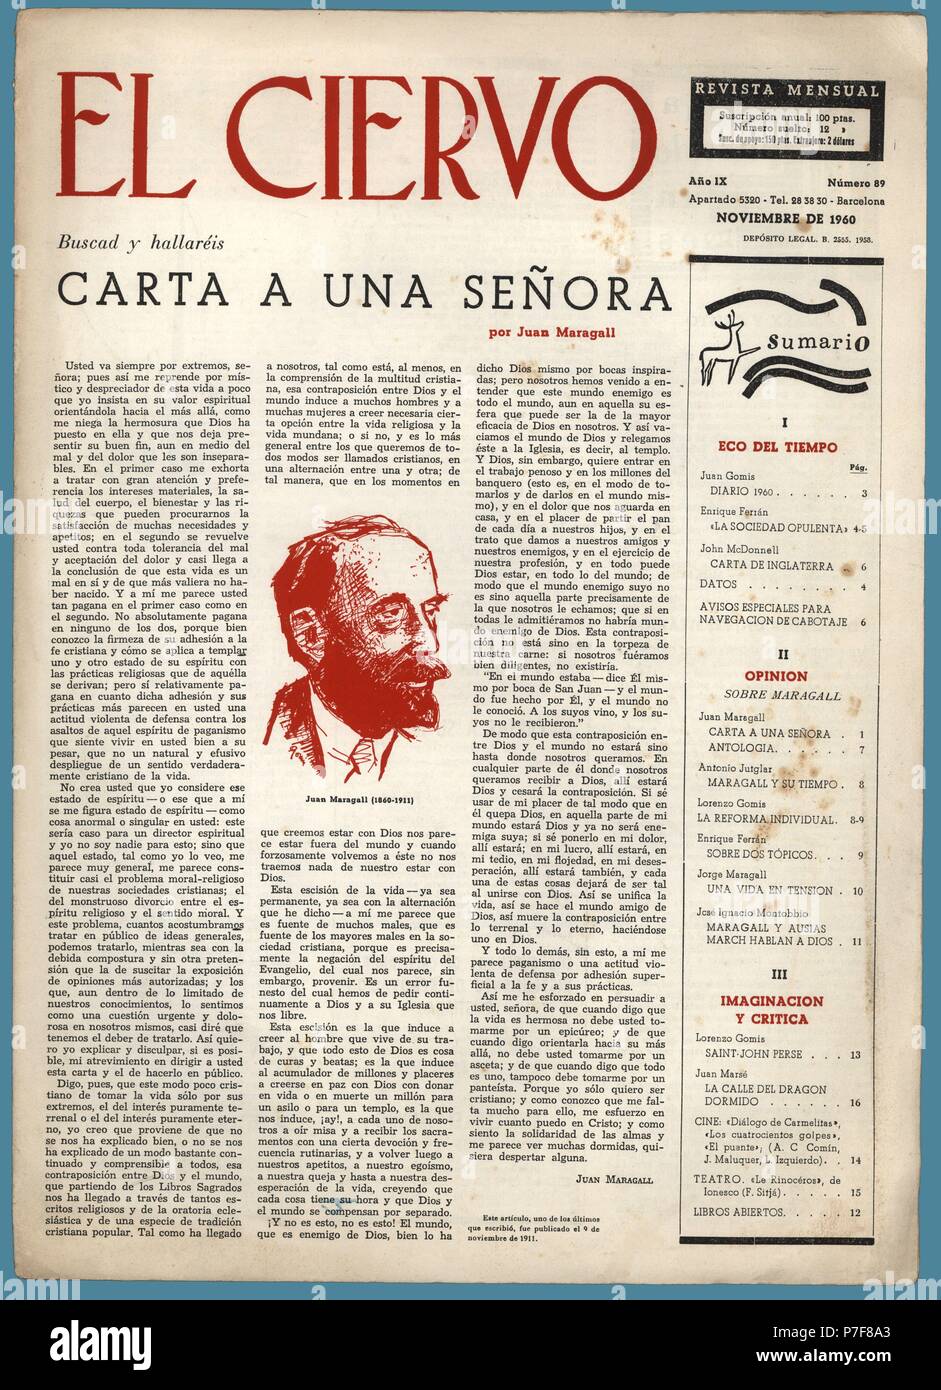 Portada de la revista mensual El Ciervo, editado en Barcelona, noviembre de 1960. Reproducción de uno de los últimos artículos publicados por el poeta Joan Maragall Gorina (1860-1911). Stock Photo